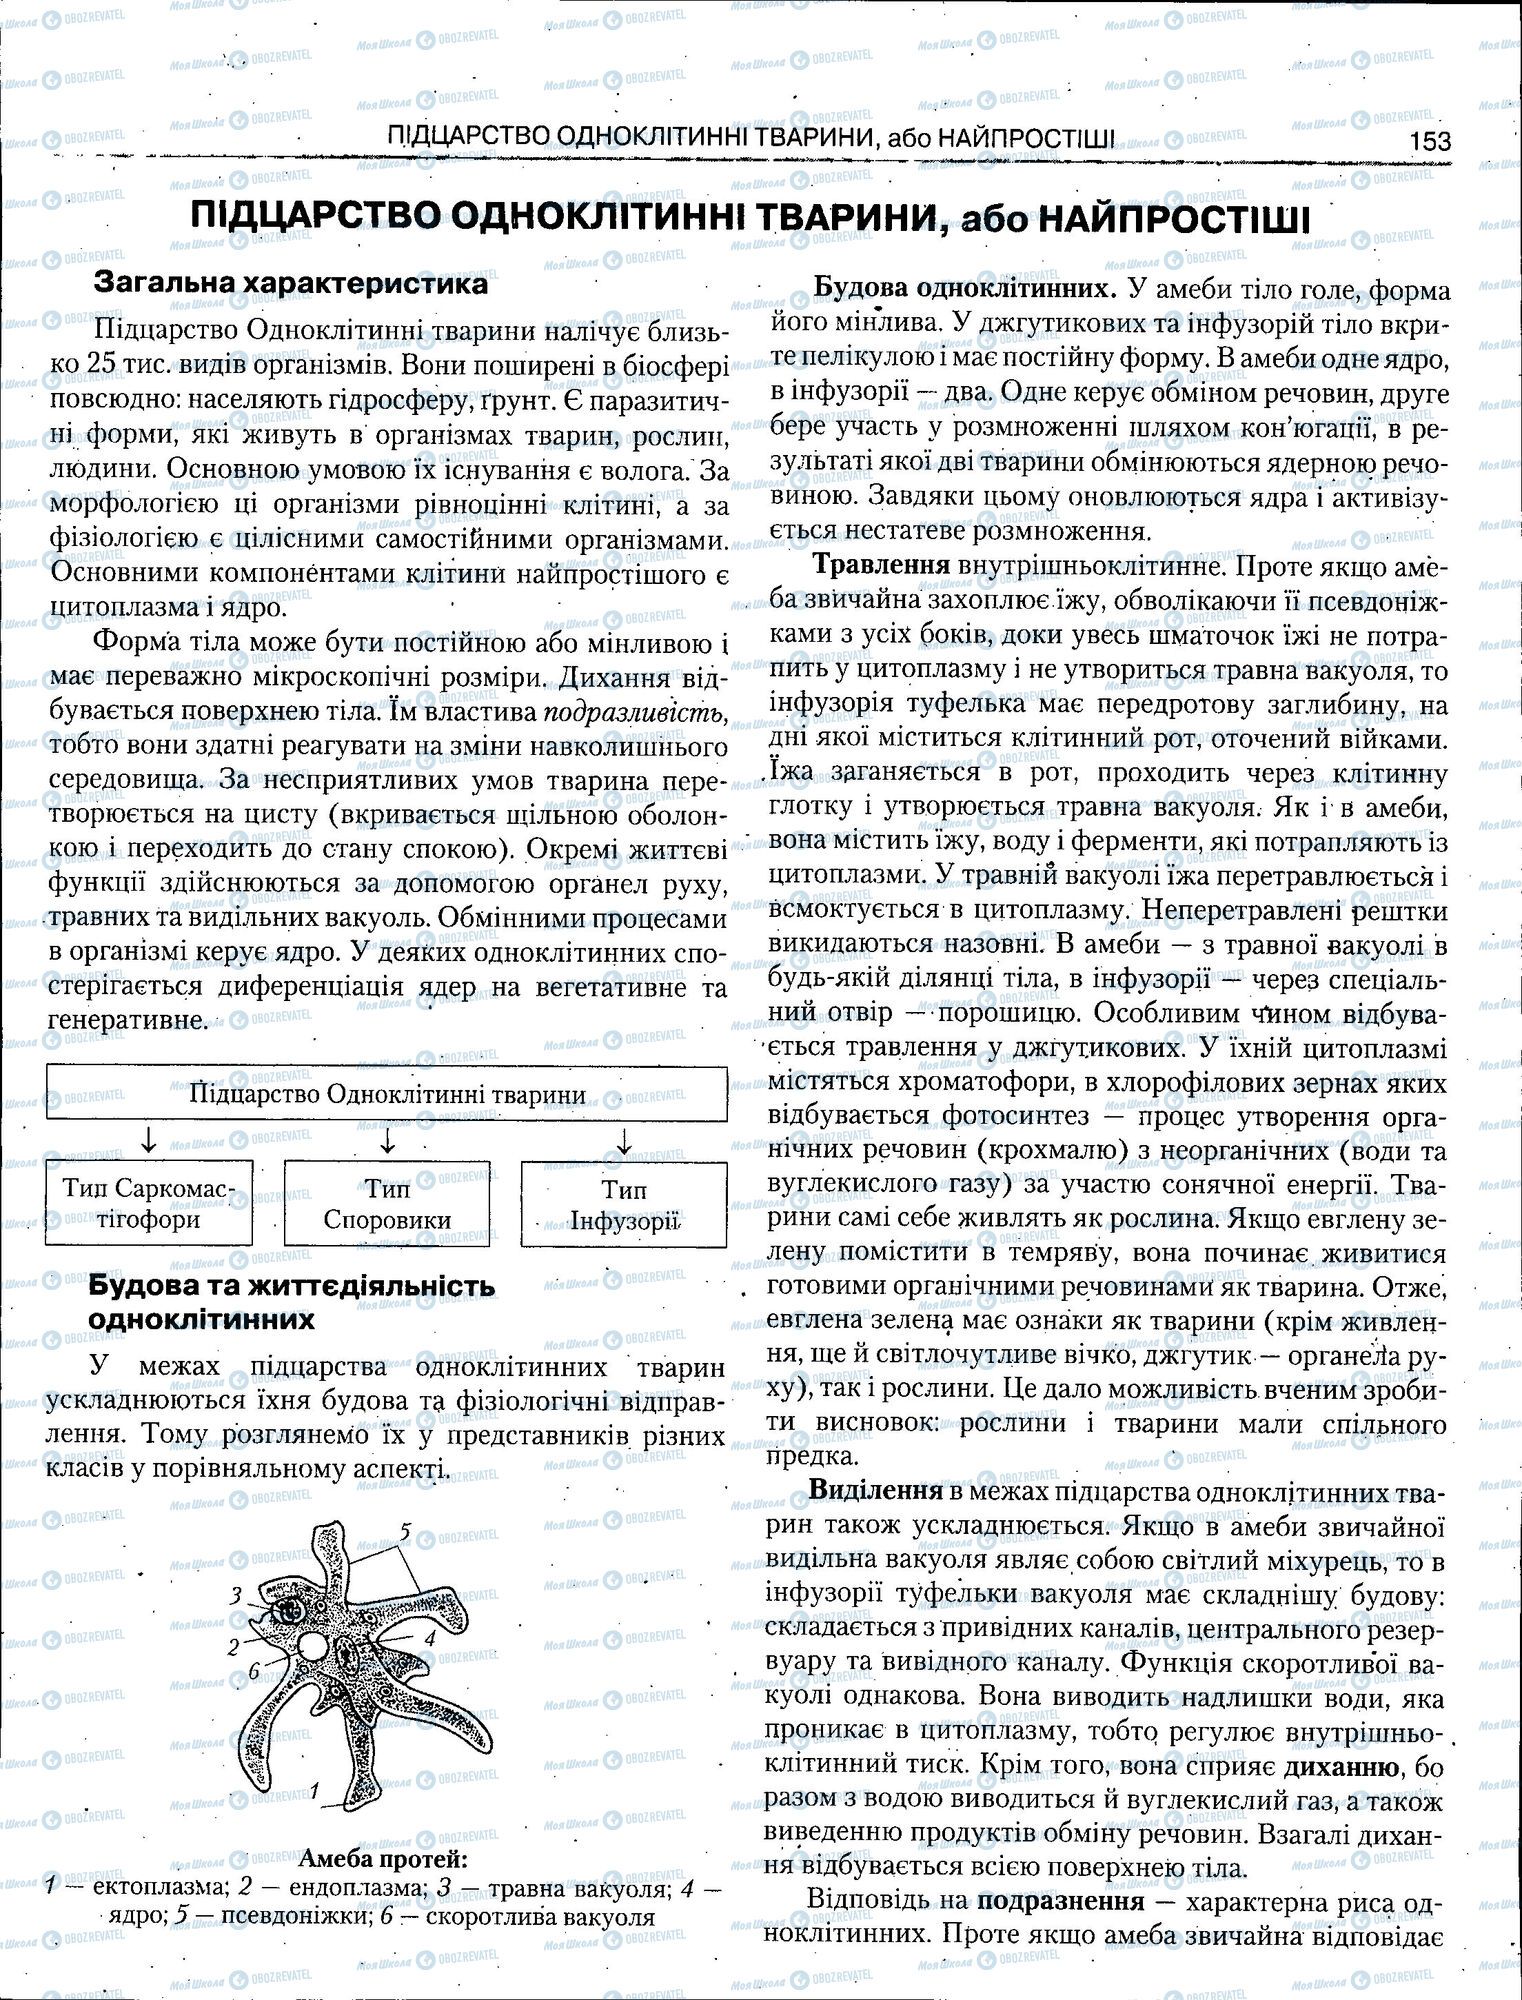 ЗНО Биология 11 класс страница 153